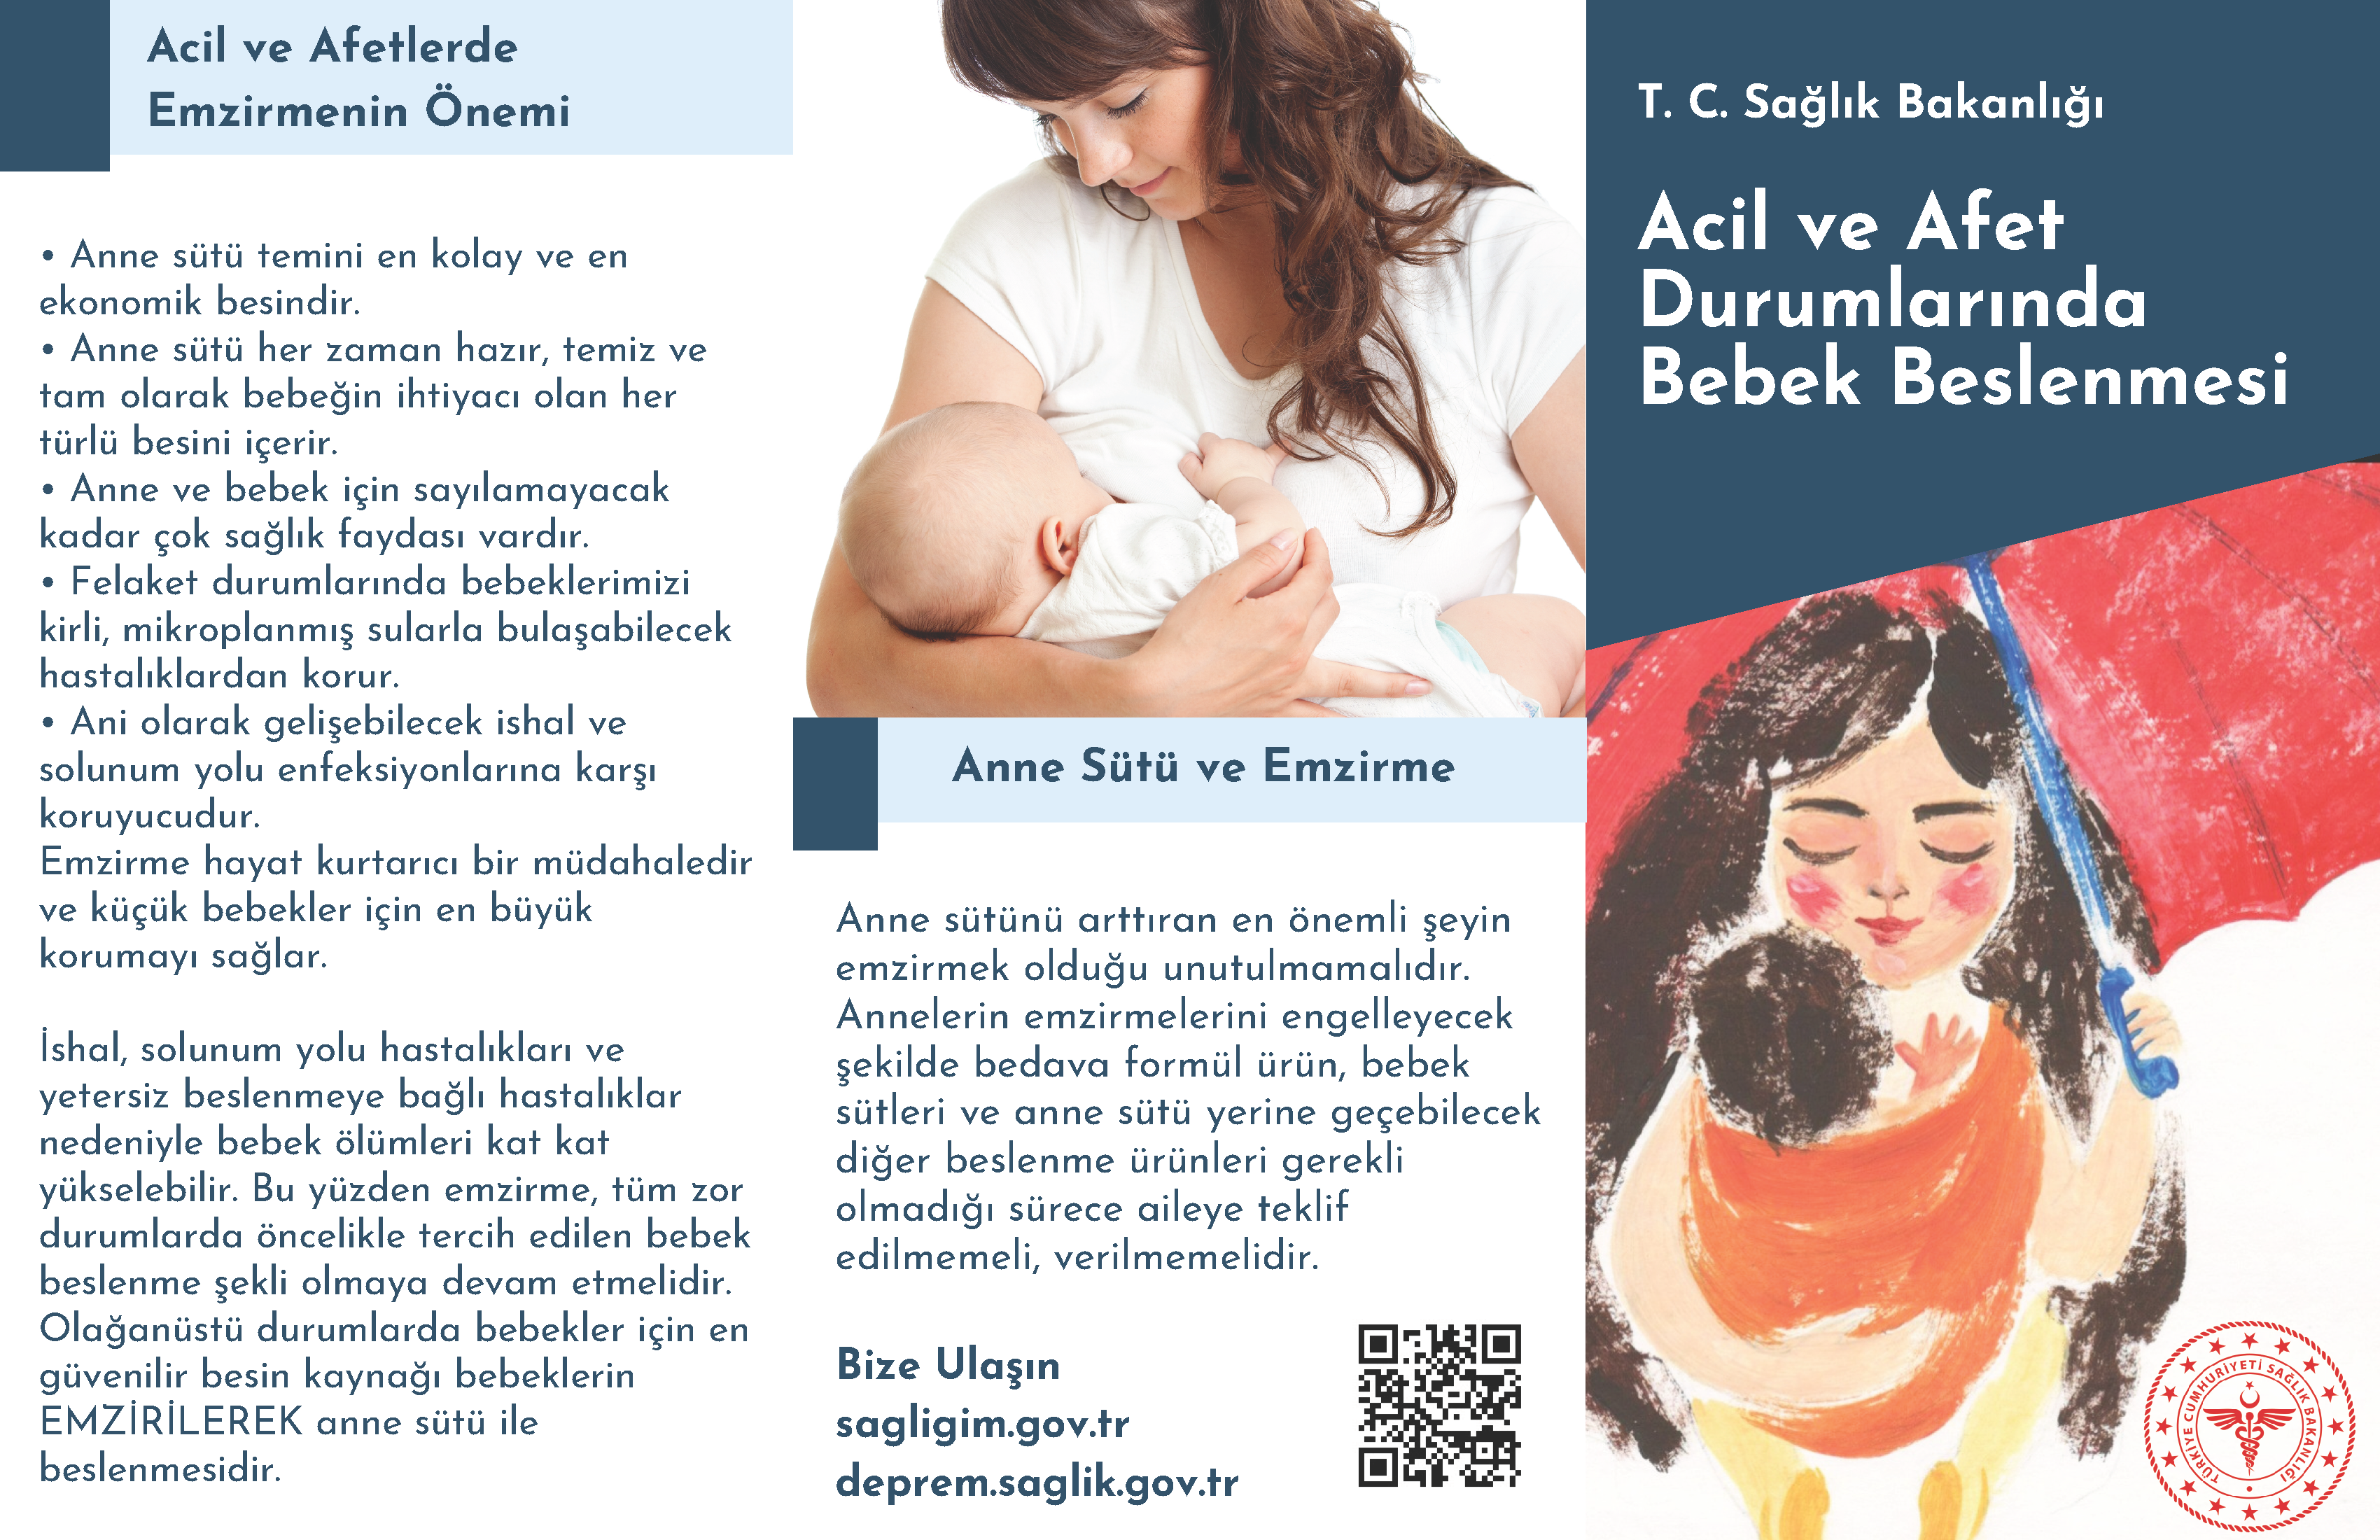 acil-afet-durumlarinda-bebek-beslenmesi-brosur_Page_1.png